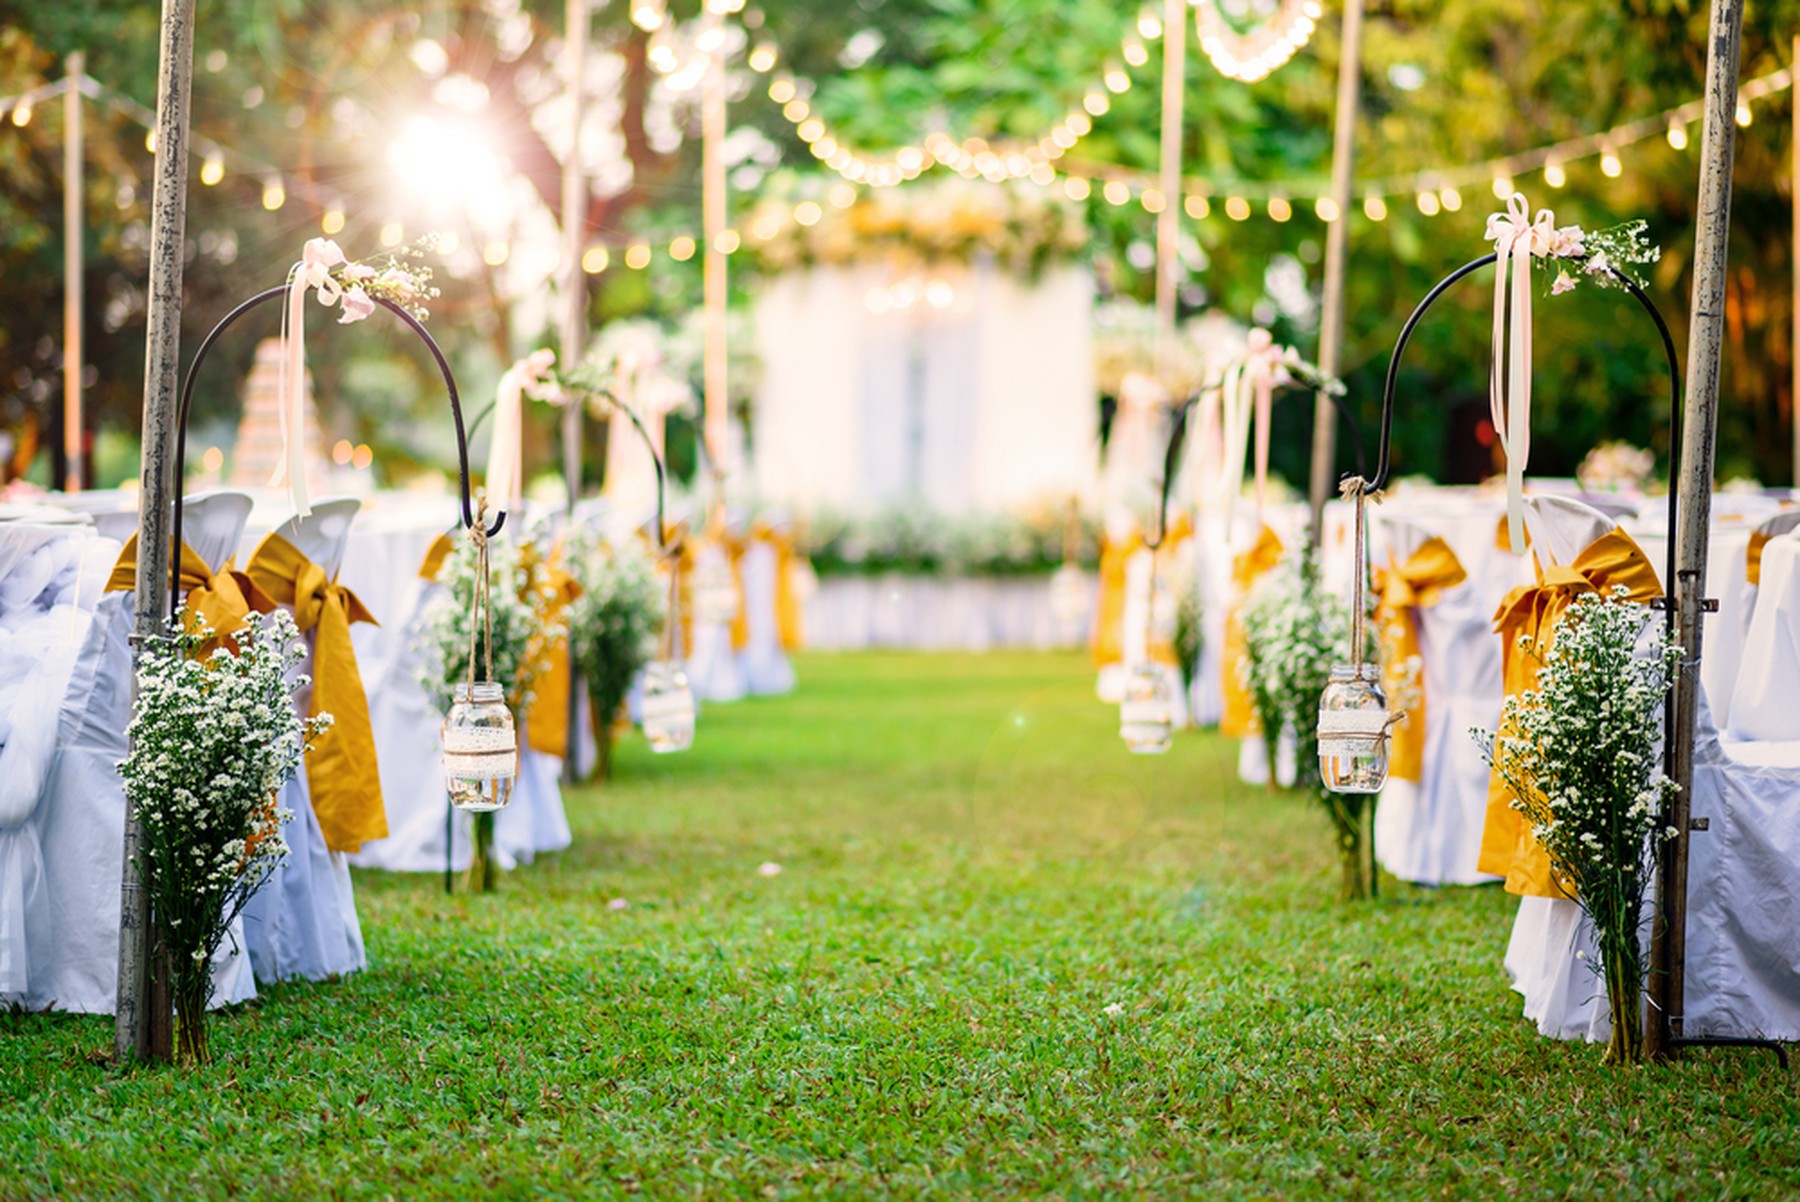 Lugar al aire libre donde se va a celebrar una boda. Se ven guirnaldas de luces, sillas blancas con lazos amarillos, ramos de flores y un altar al fondo.